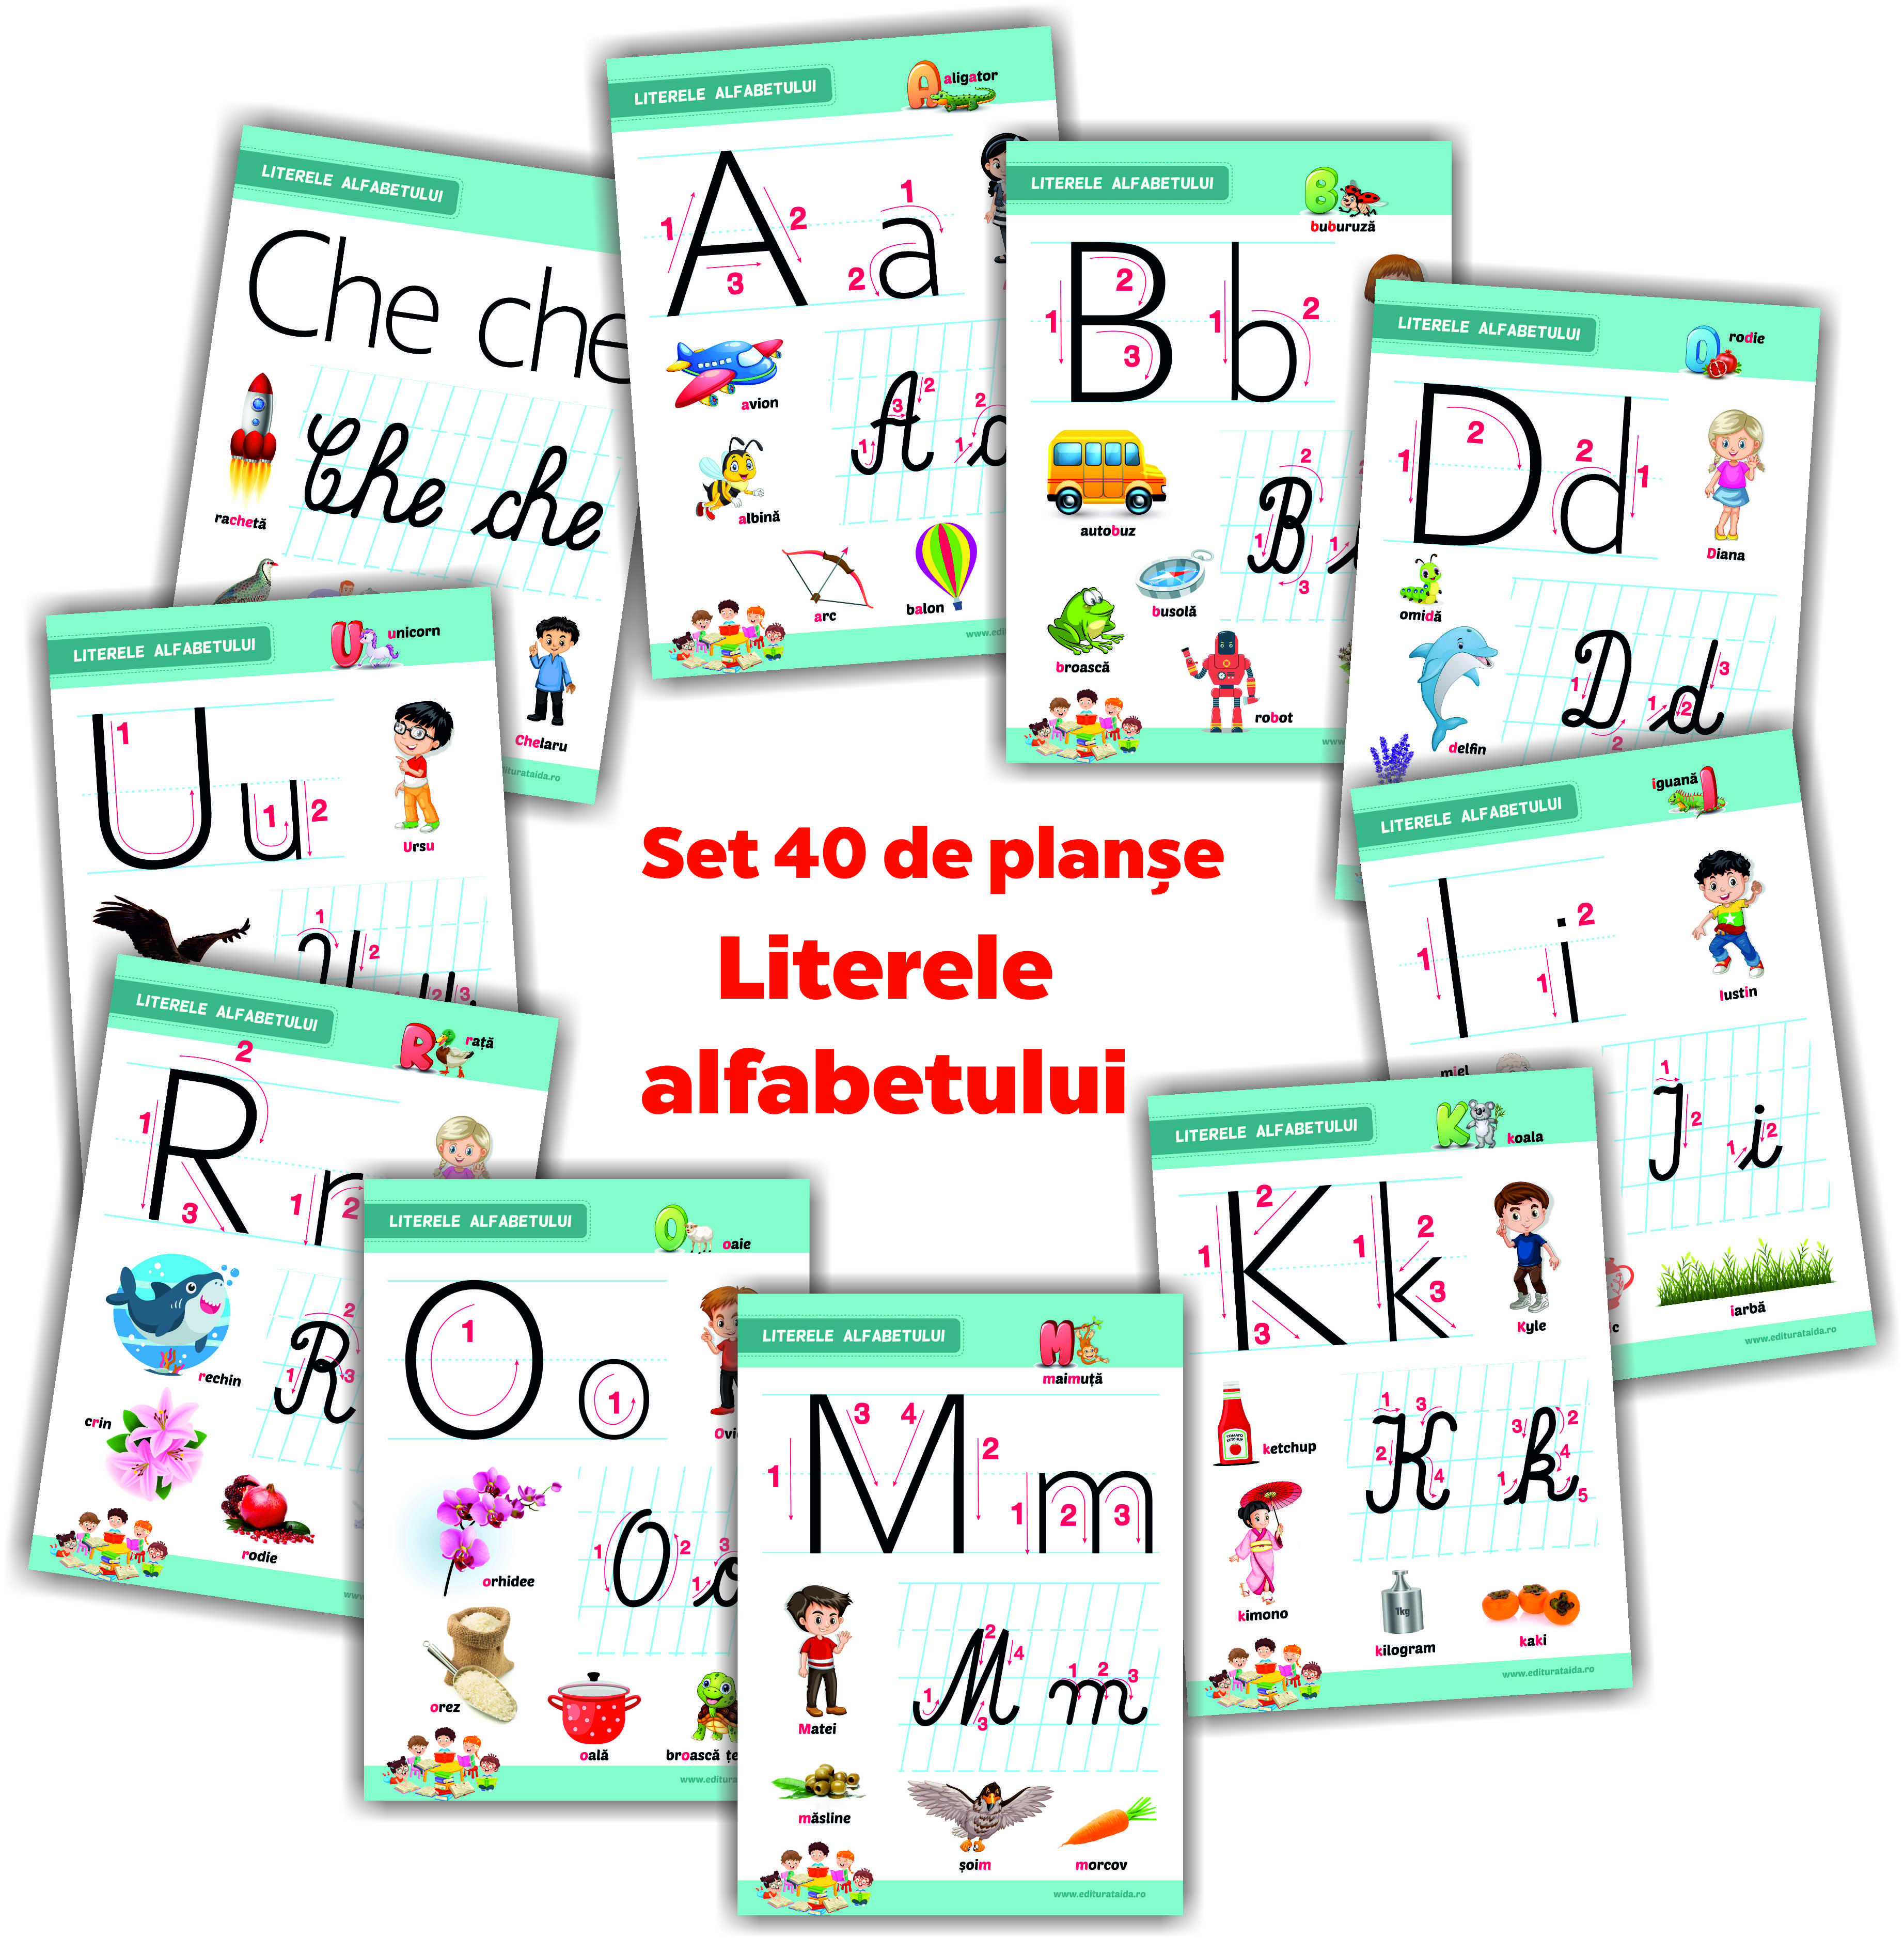 Literele alfabetului - set 40 de planșe didactice pentru clasa pregatitoare și pentru clasa I (FOLIATE)